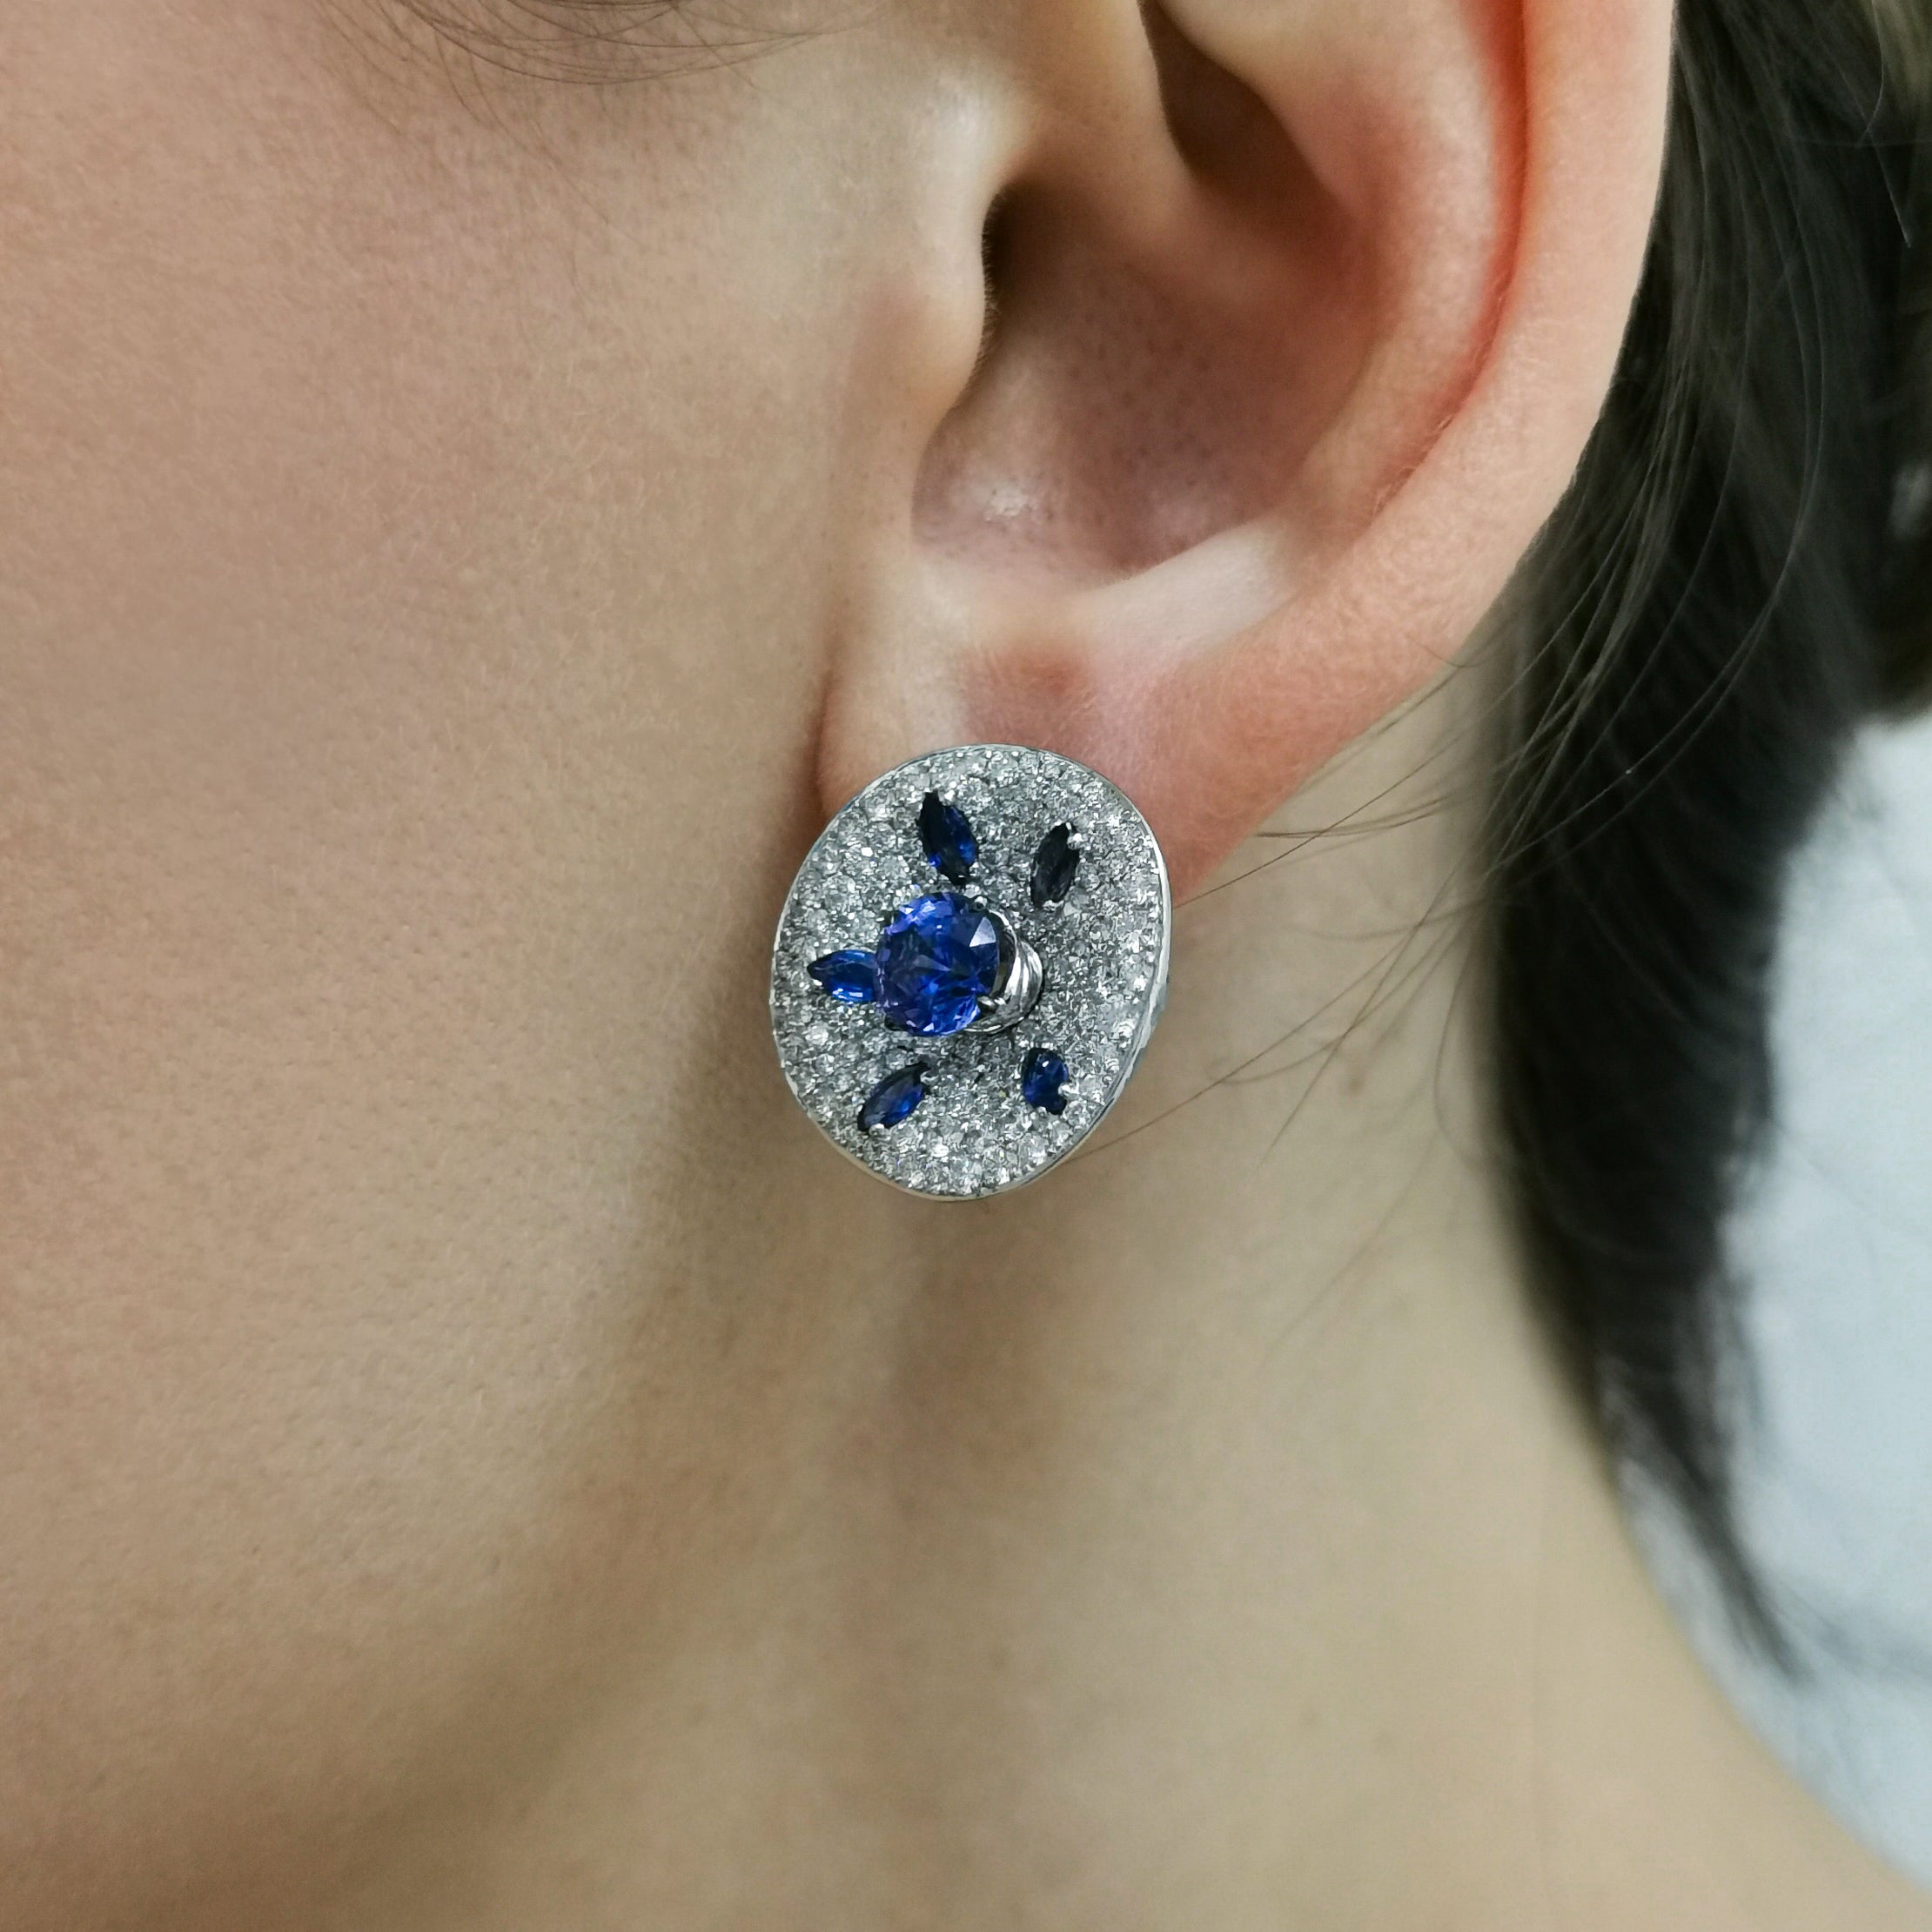 E 0205-21, 18K White Gold, Sapphires, Diamonds Earrings